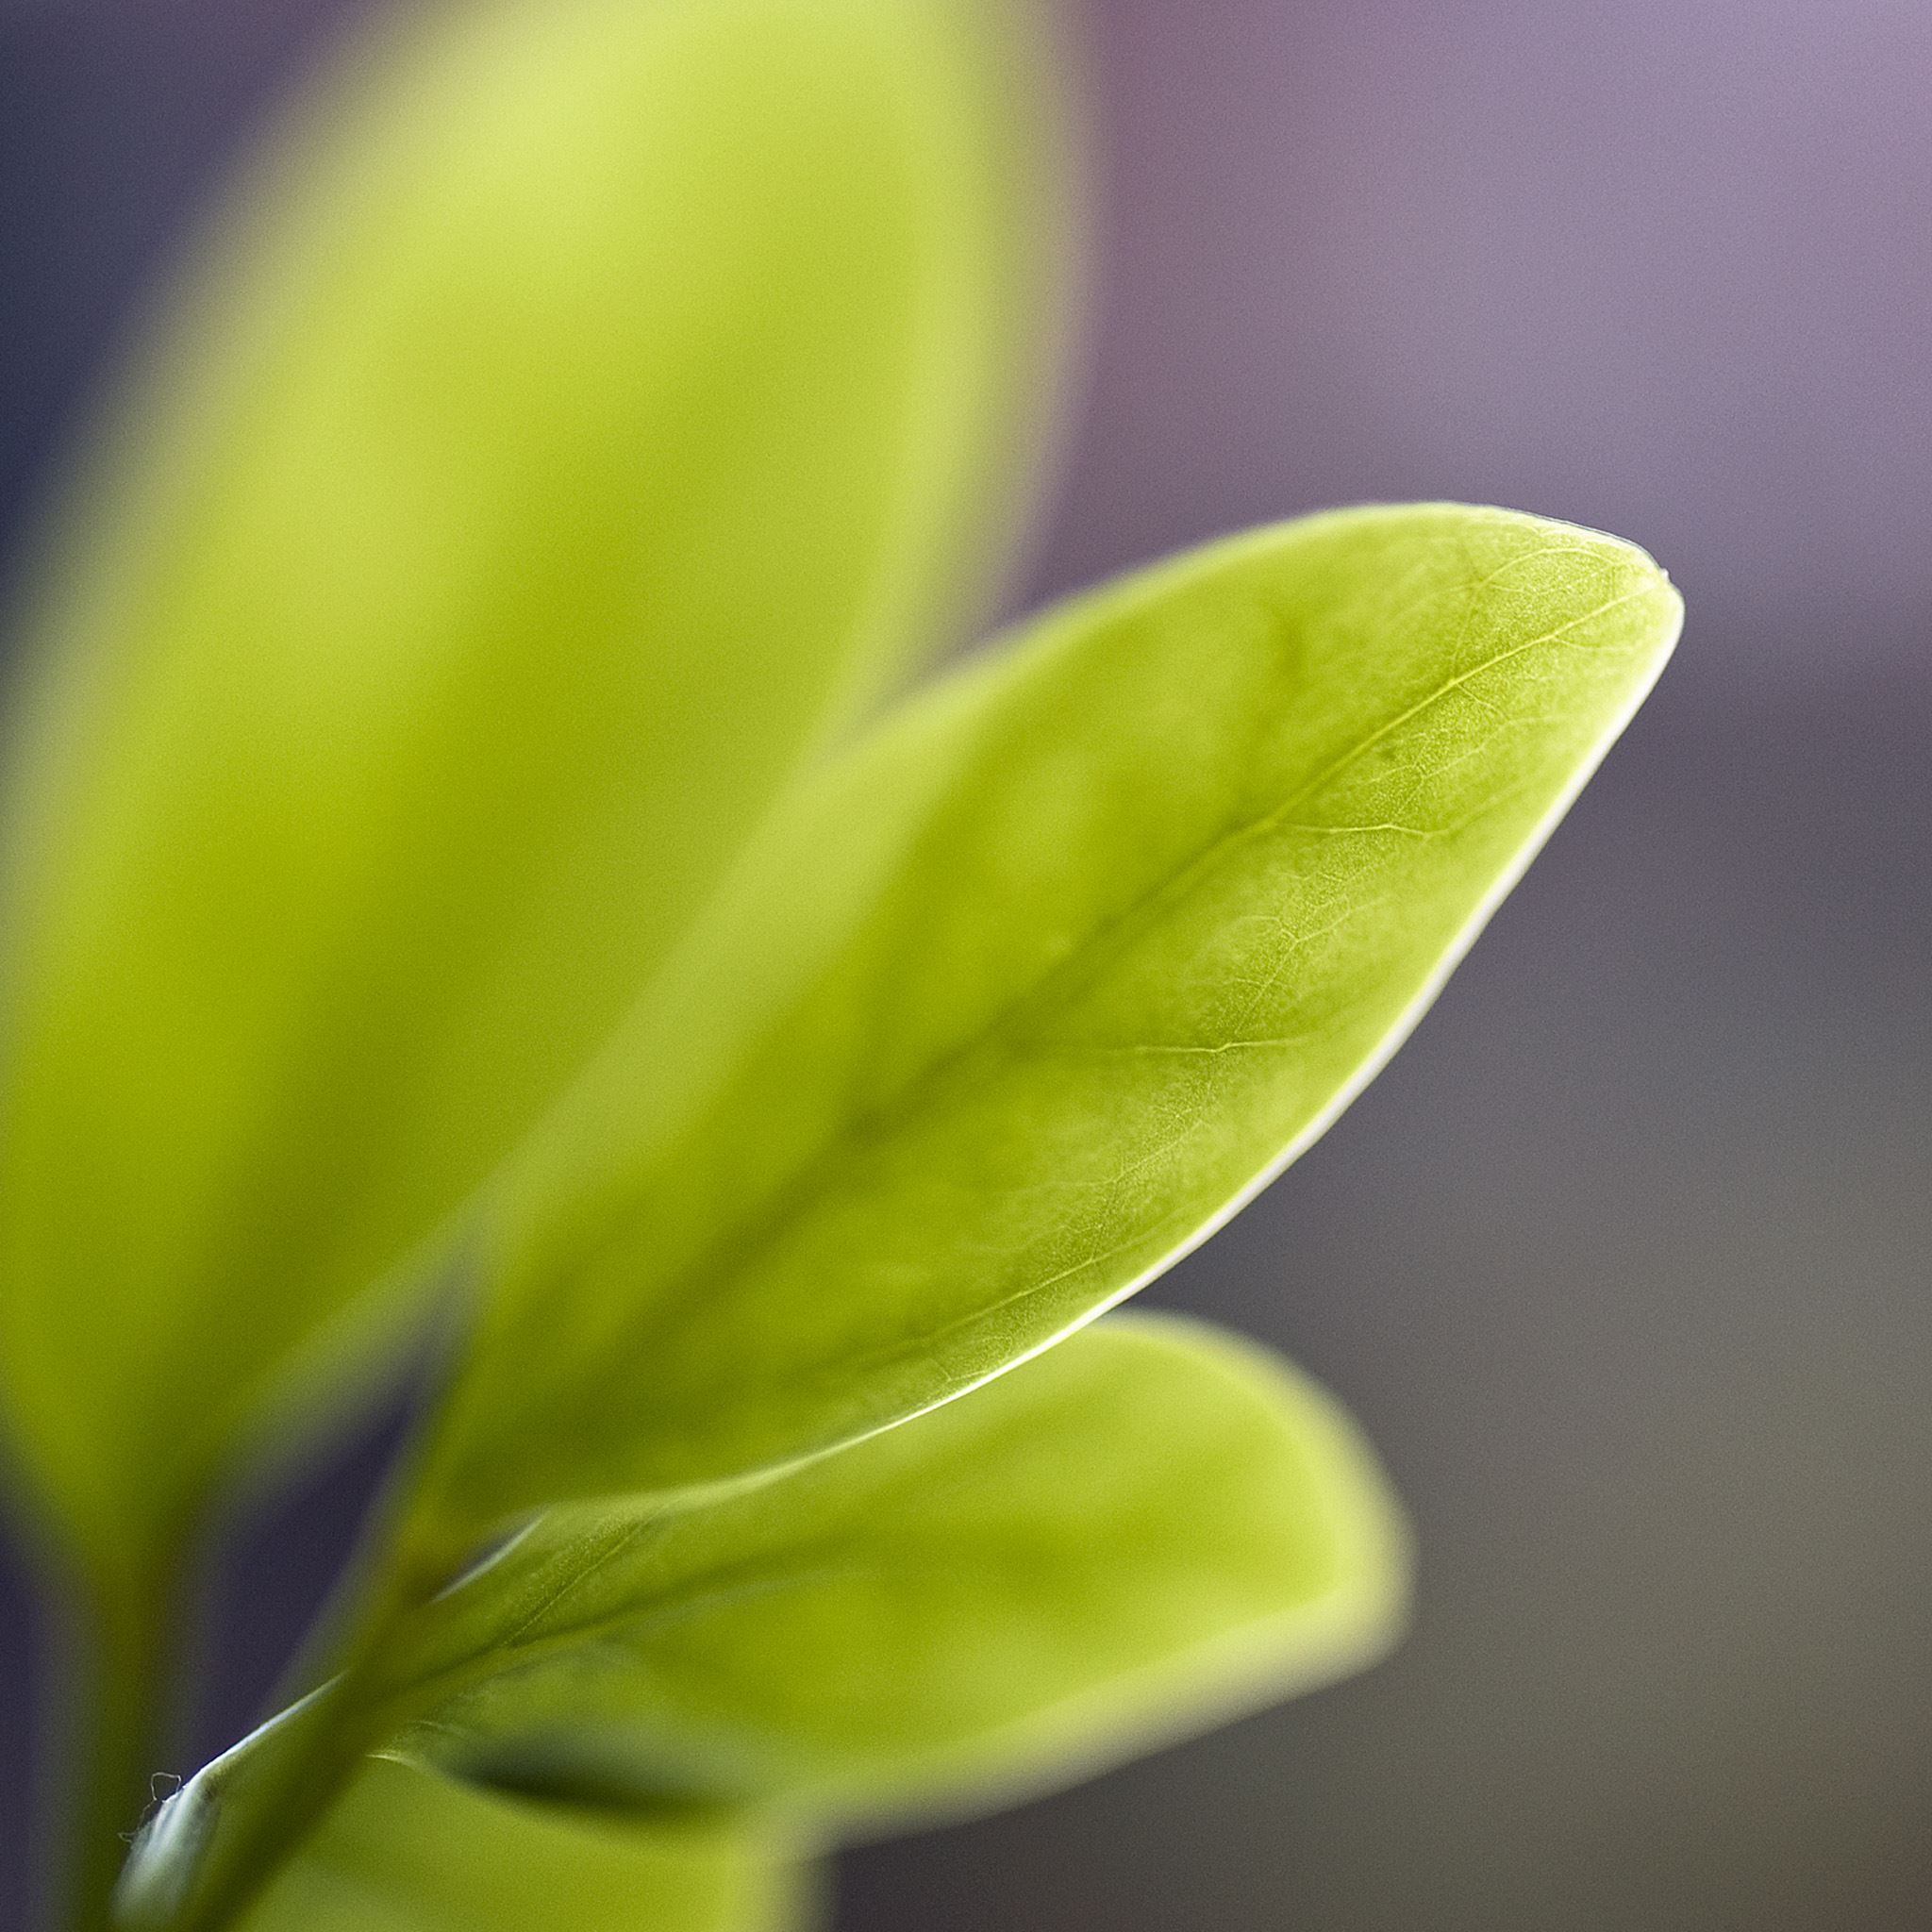 Нежные листики. Leaf Bud. Фон серый блики и листья зеленые. Herb macro.